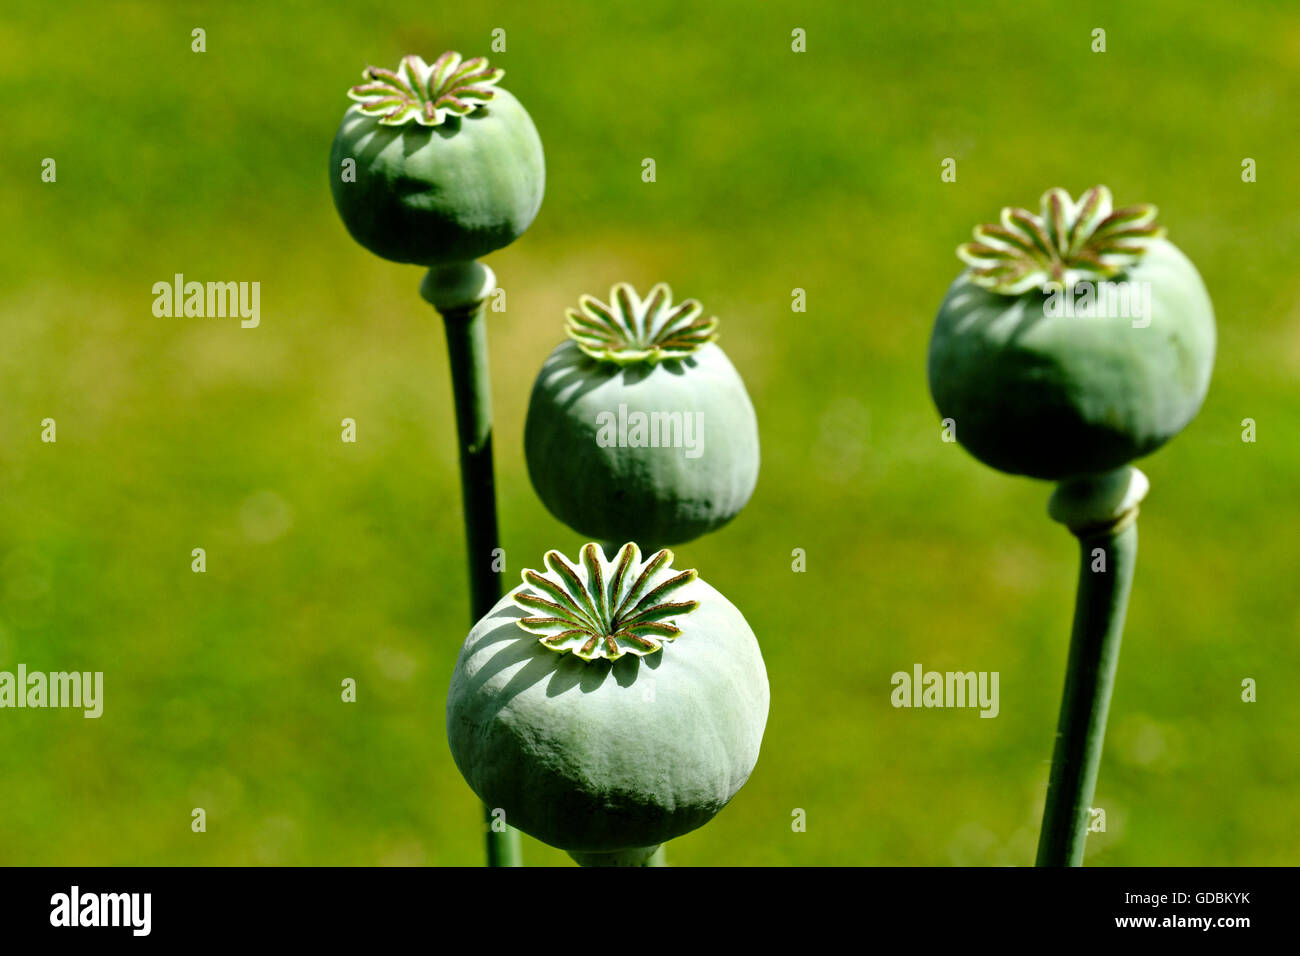 Poppy seed heads Stock Photo - Alamy